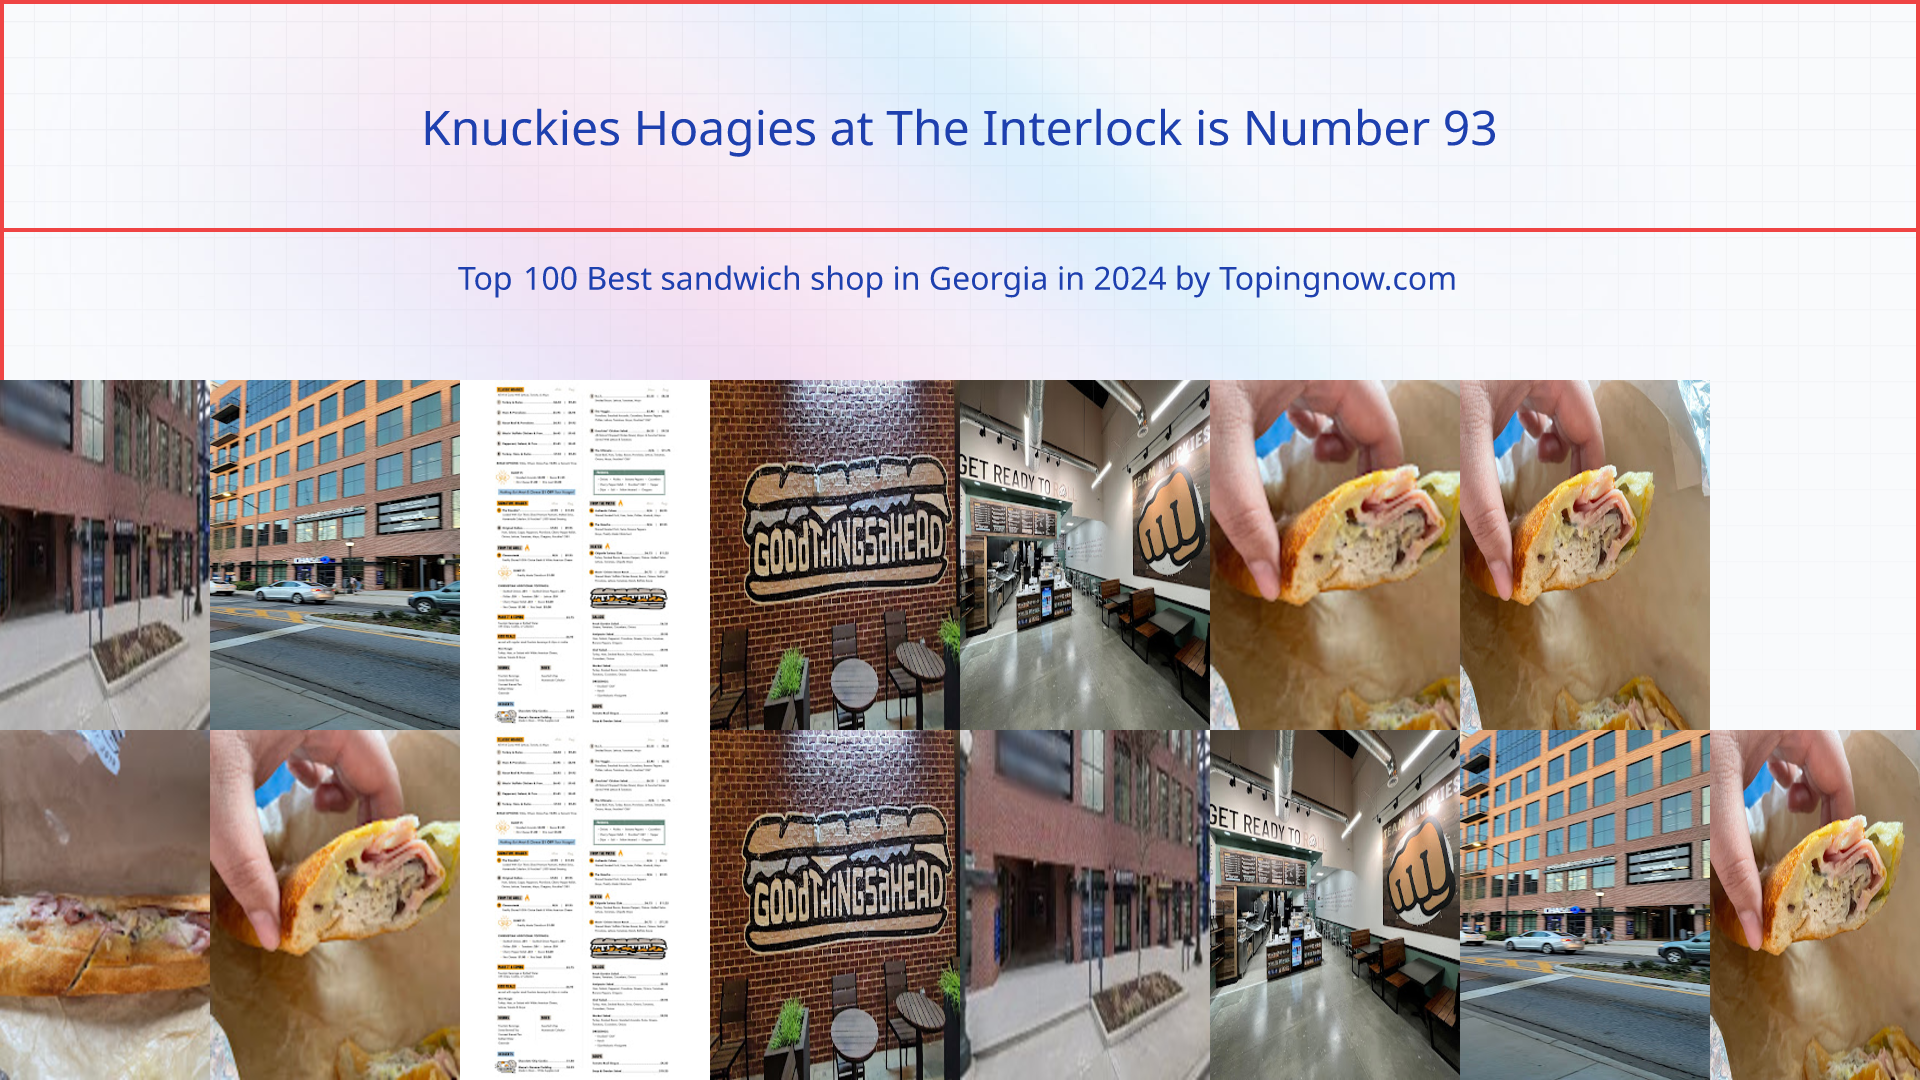 Knuckies Hoagies at The Interlock: Top 100 Best sandwich shop in Georgia in 2024